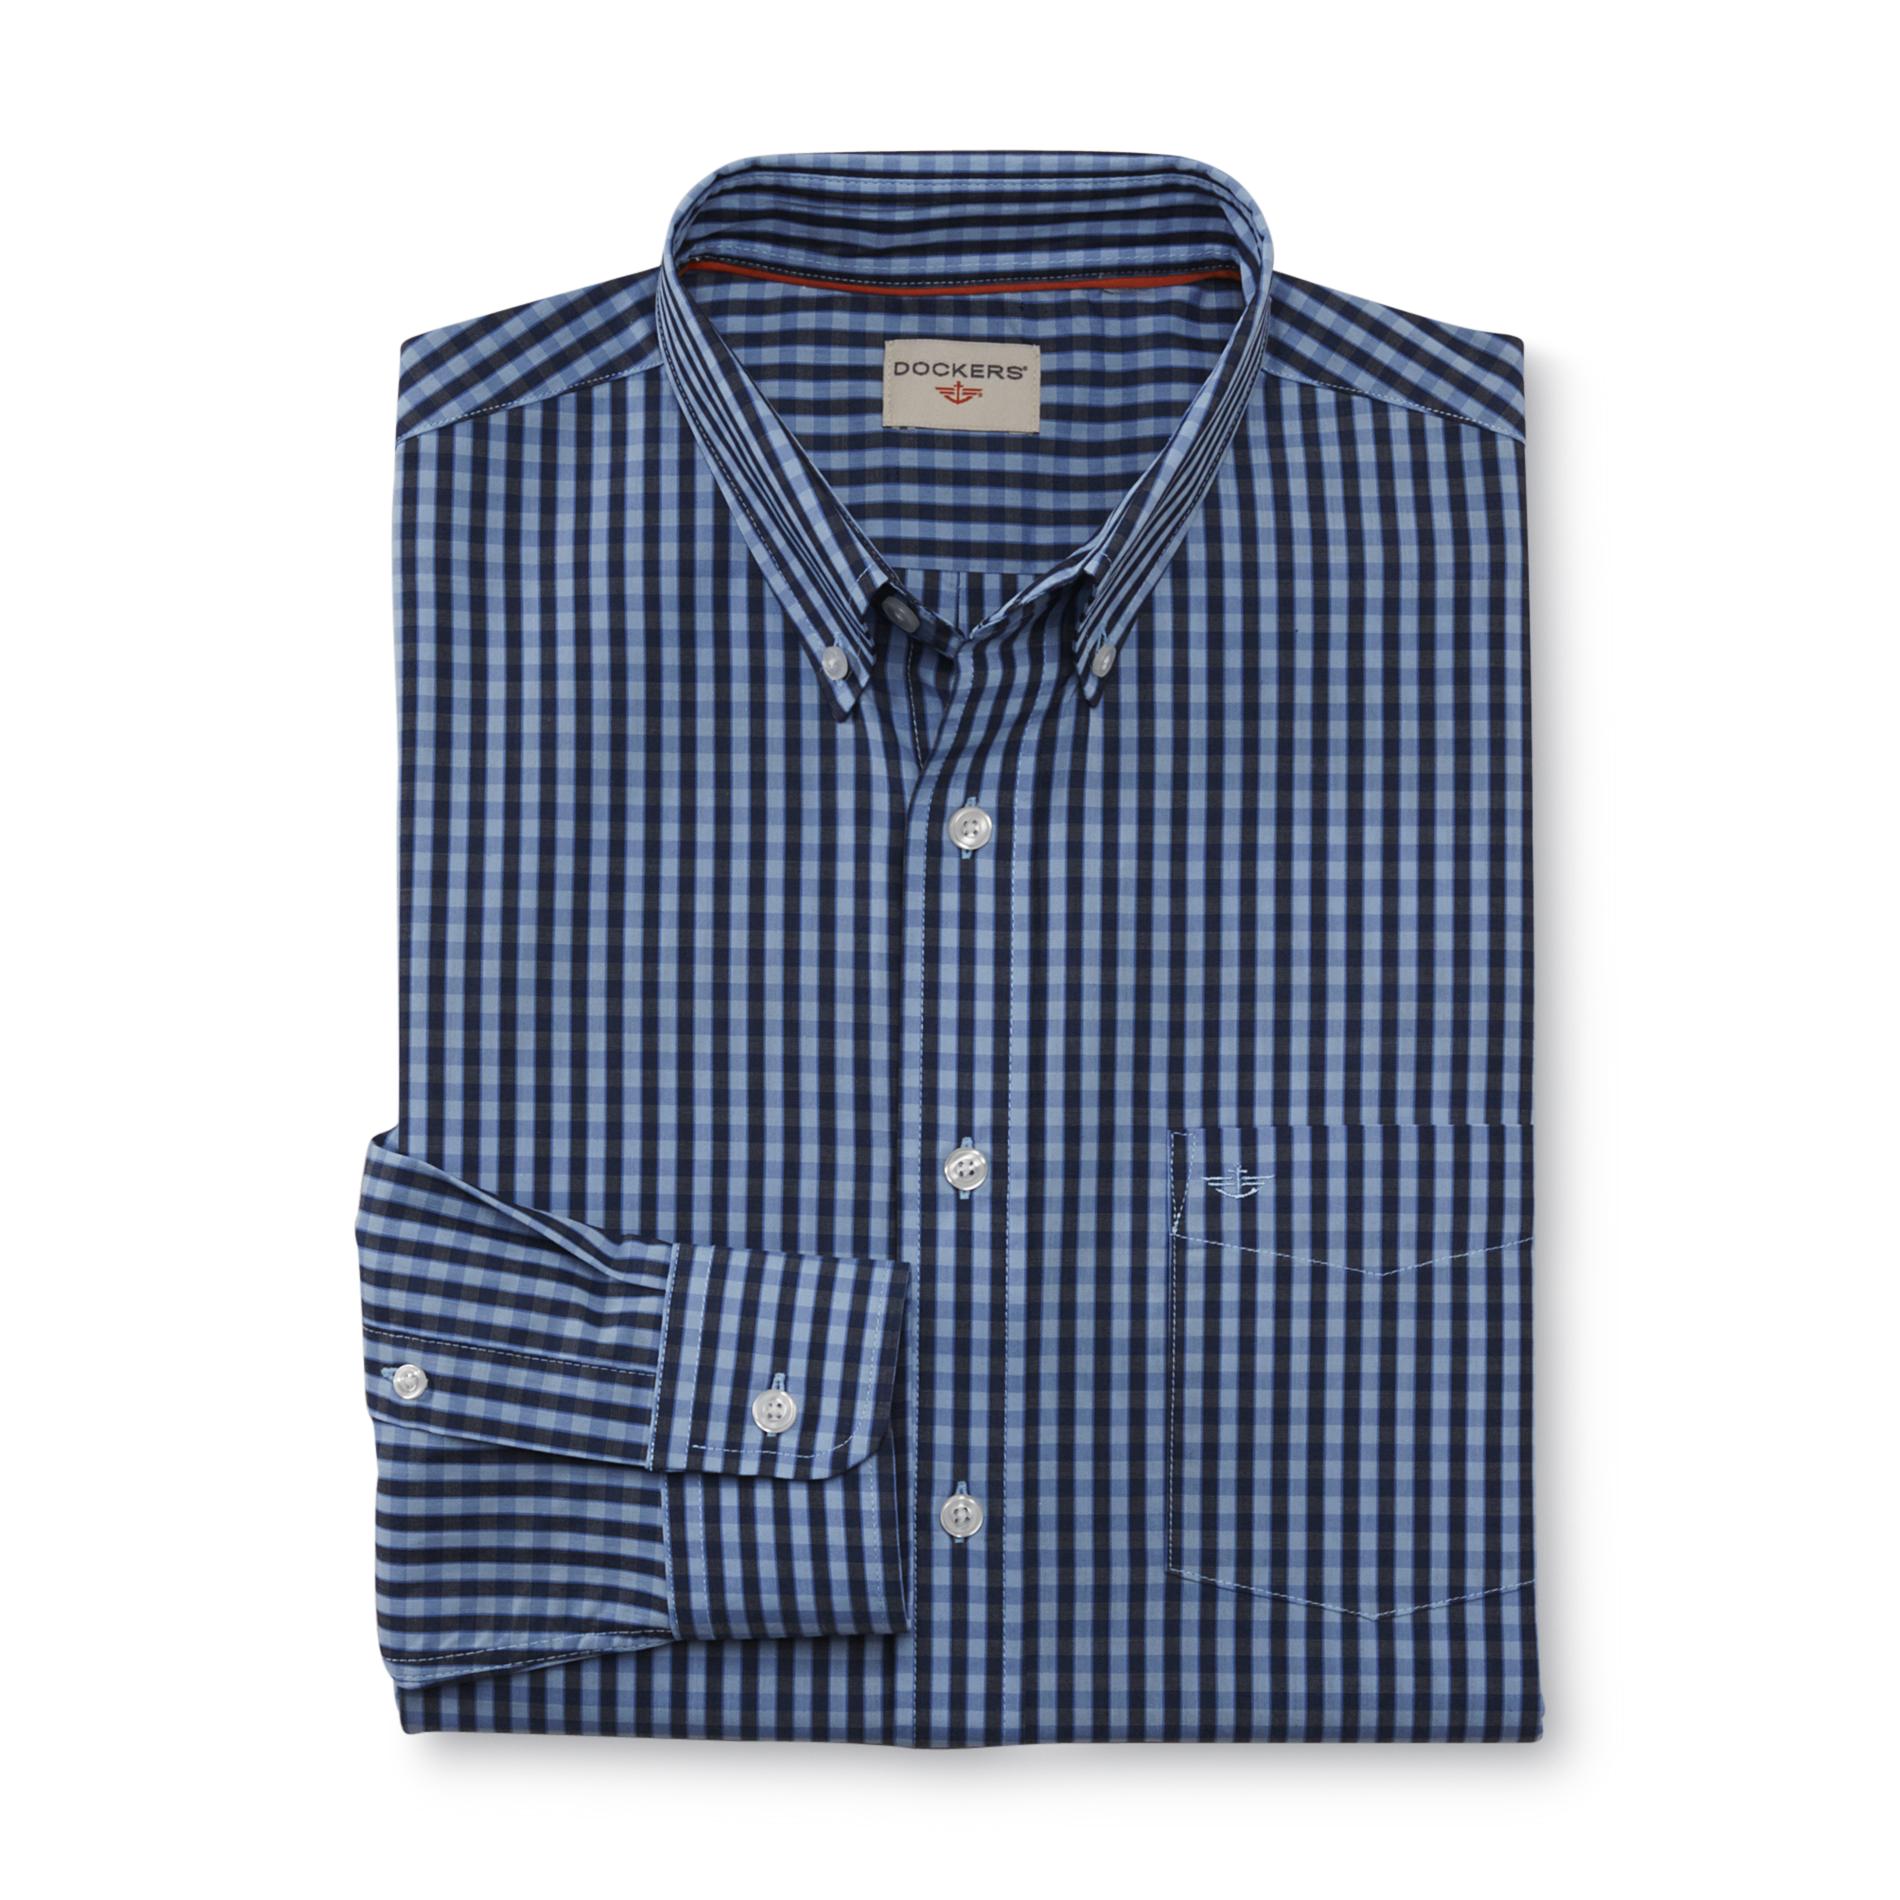 Dockers Men's Dress Shirt - Framed Gingham Check